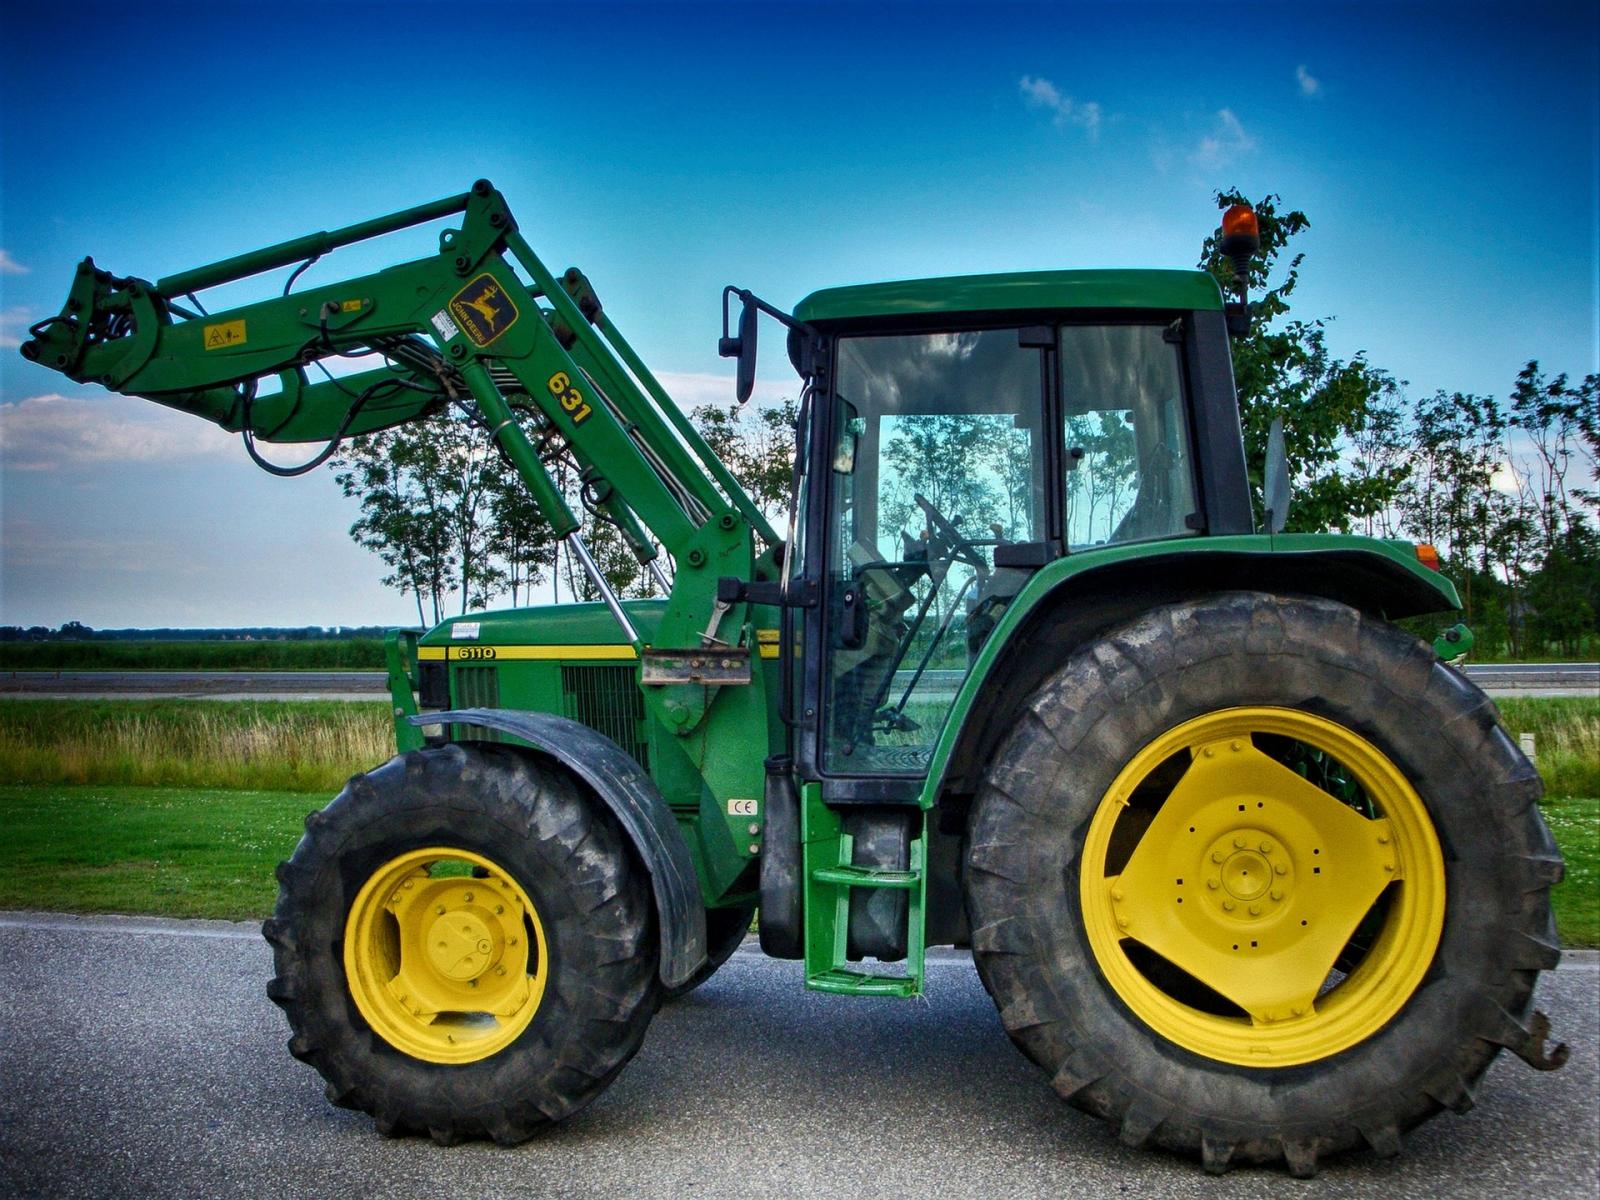 John Deere Tractors - INDOSTRONGMAN